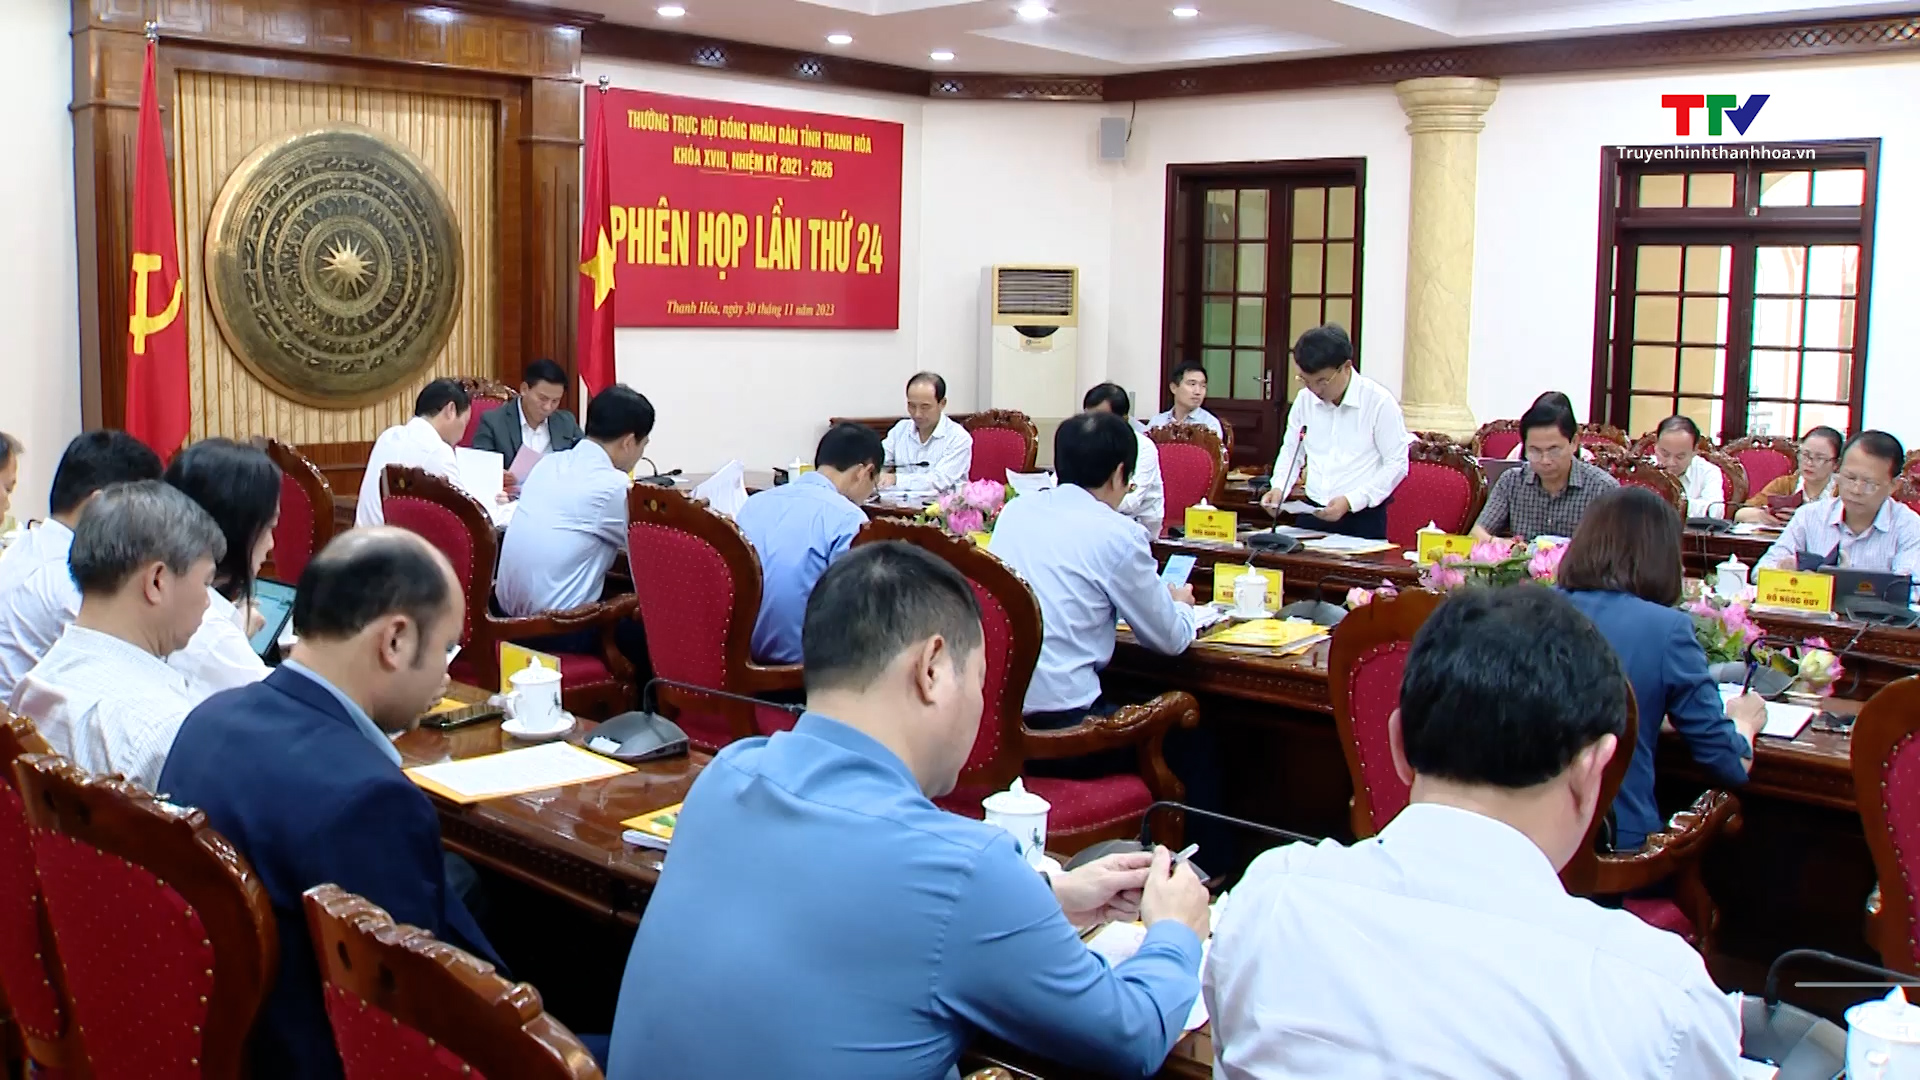 Phiên họp lần thứ 24, Thường trực Hội đồng Nhân dân tỉnh Thanh Hoá khoá XVIII, nhiệm kỳ 2021 – 2026- Ảnh 1.